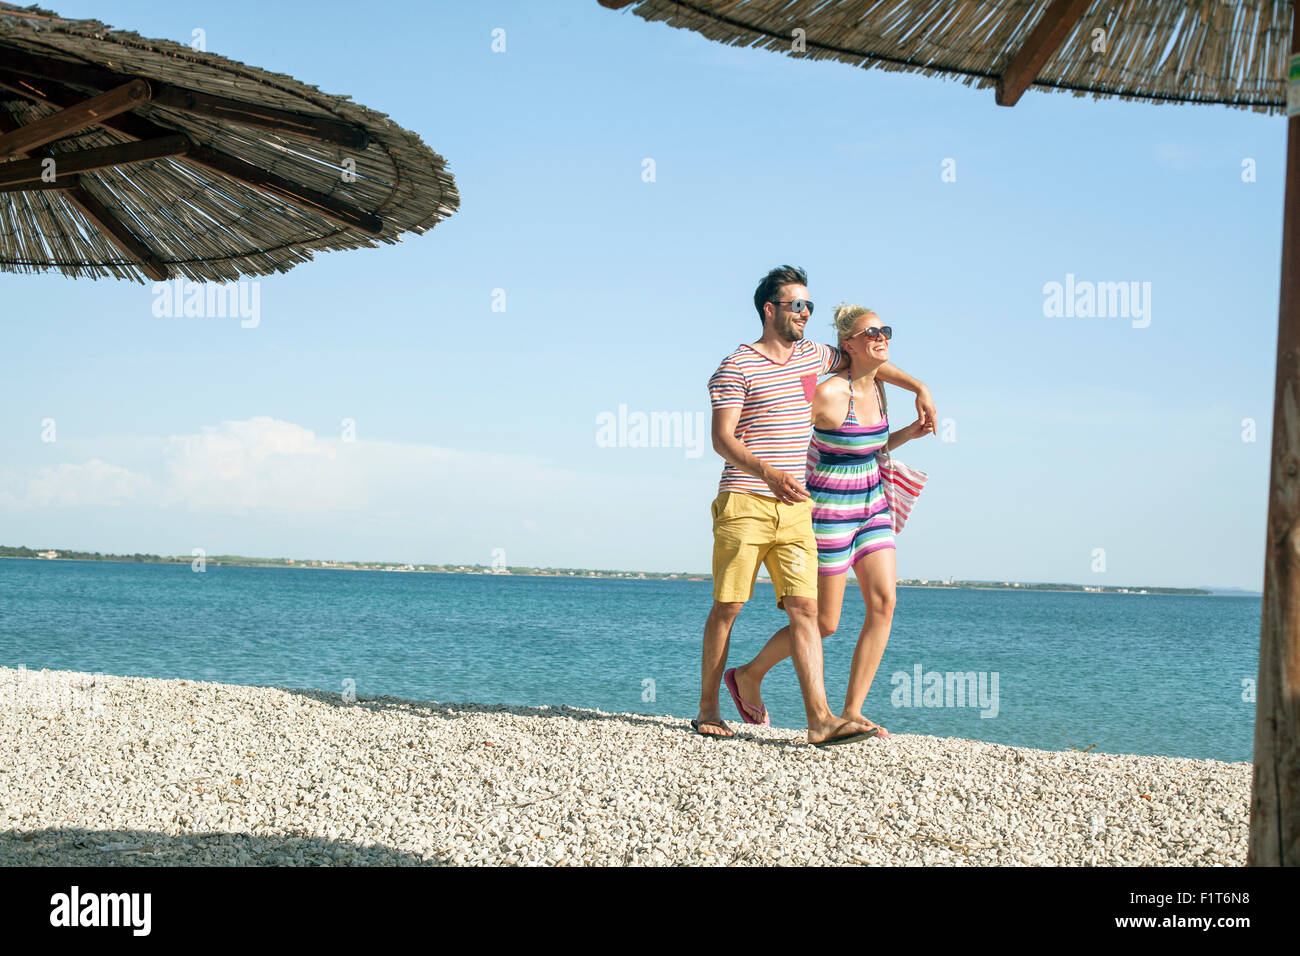 Jeune couple walking on beach Banque D'Images